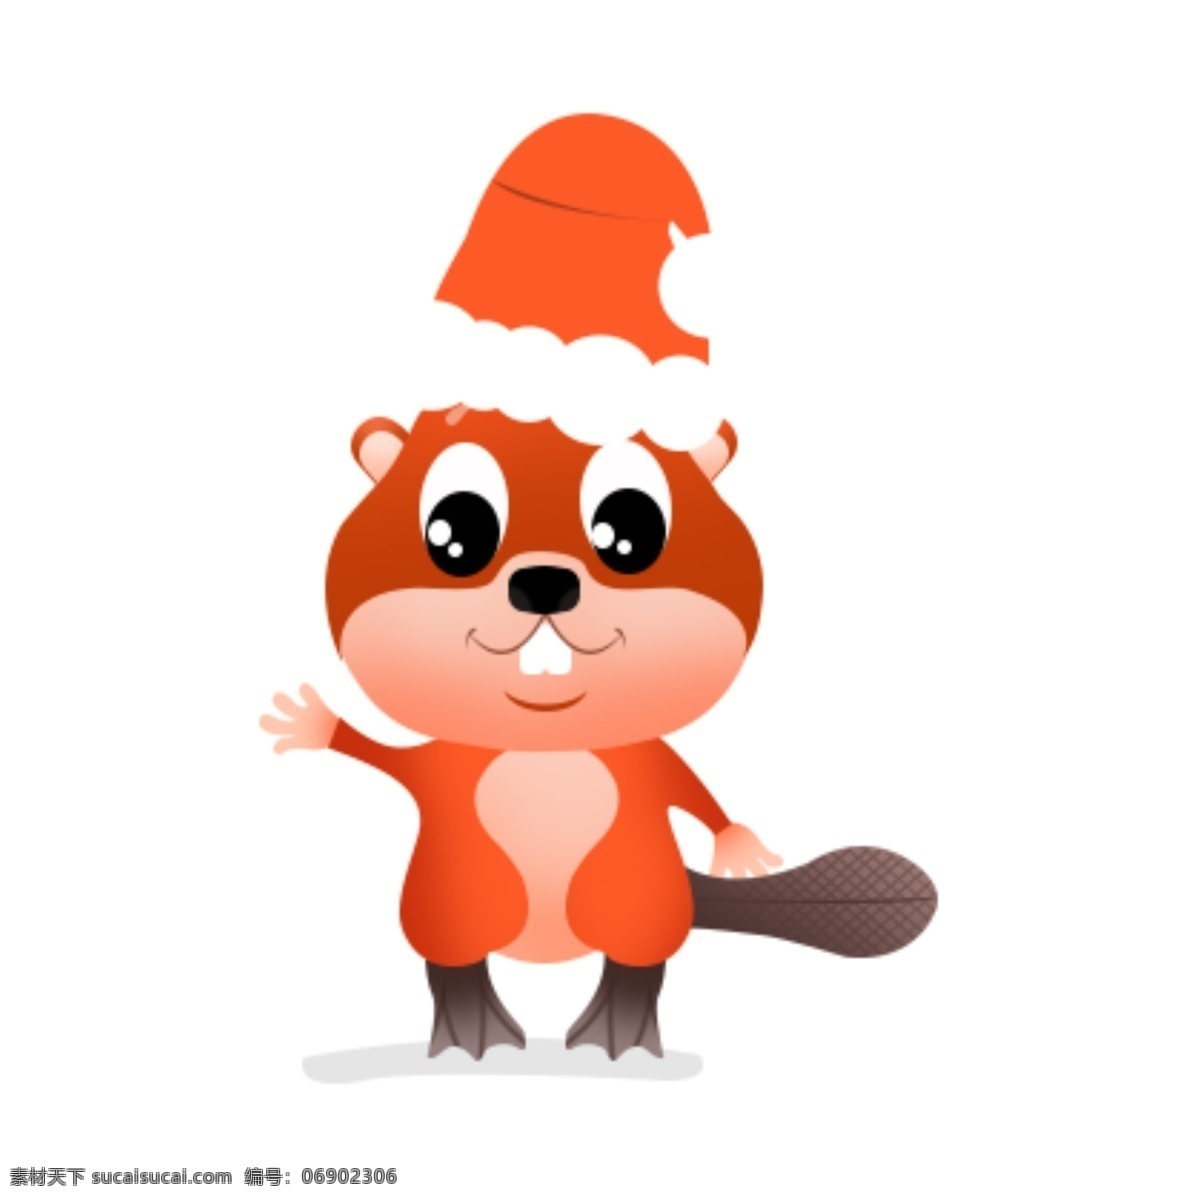 小海狸 海狸 动物 卡通 icon 动漫 矢量图 分层